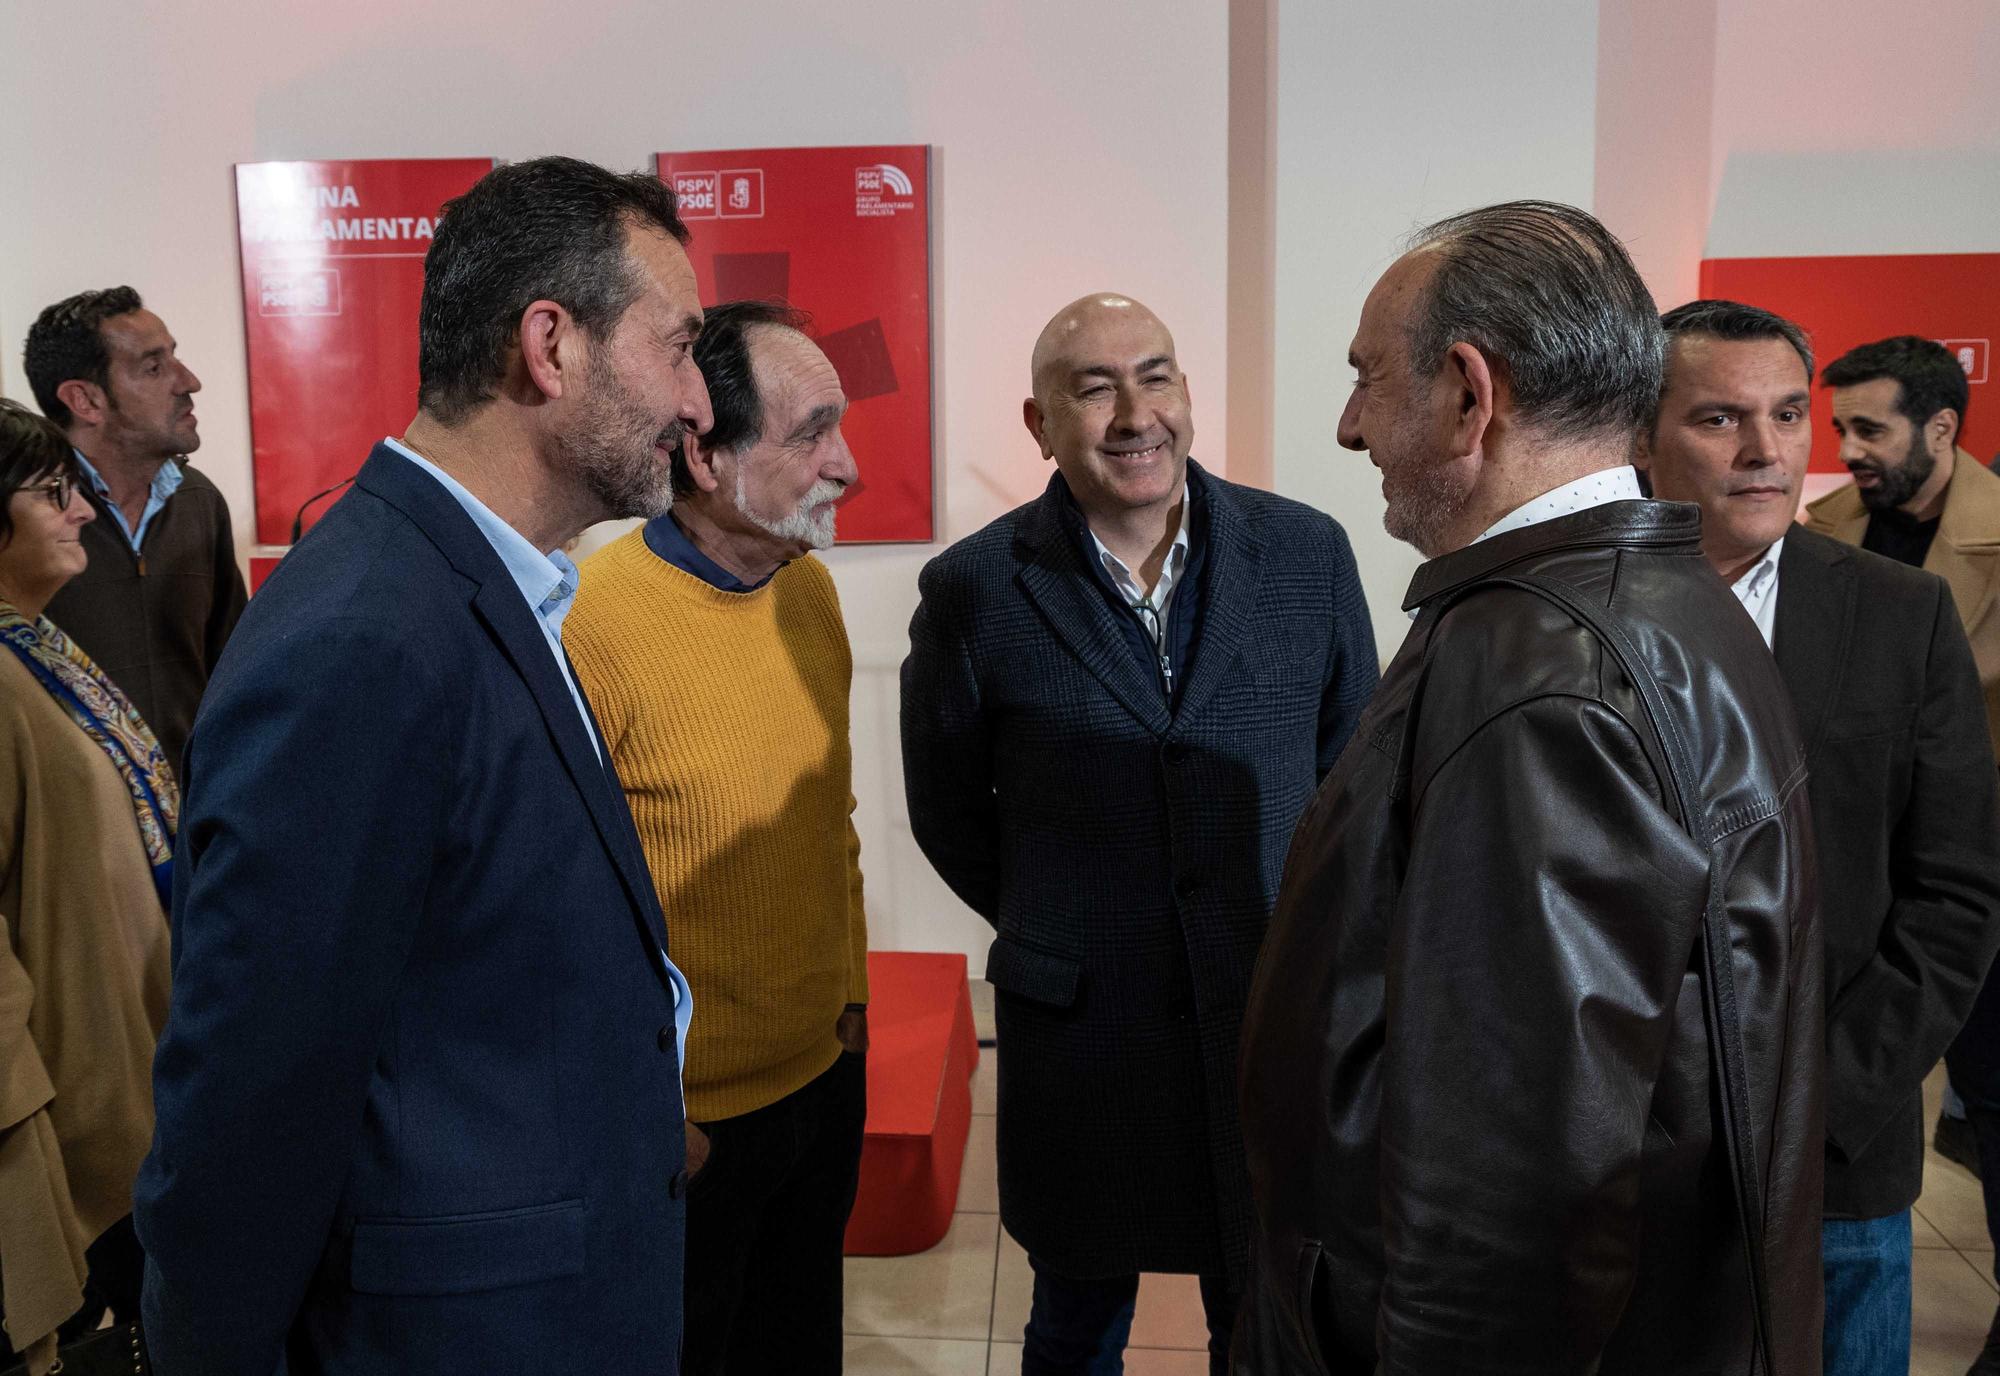 El PSOE inaugura su nueva sede parlamentaria en Alicante